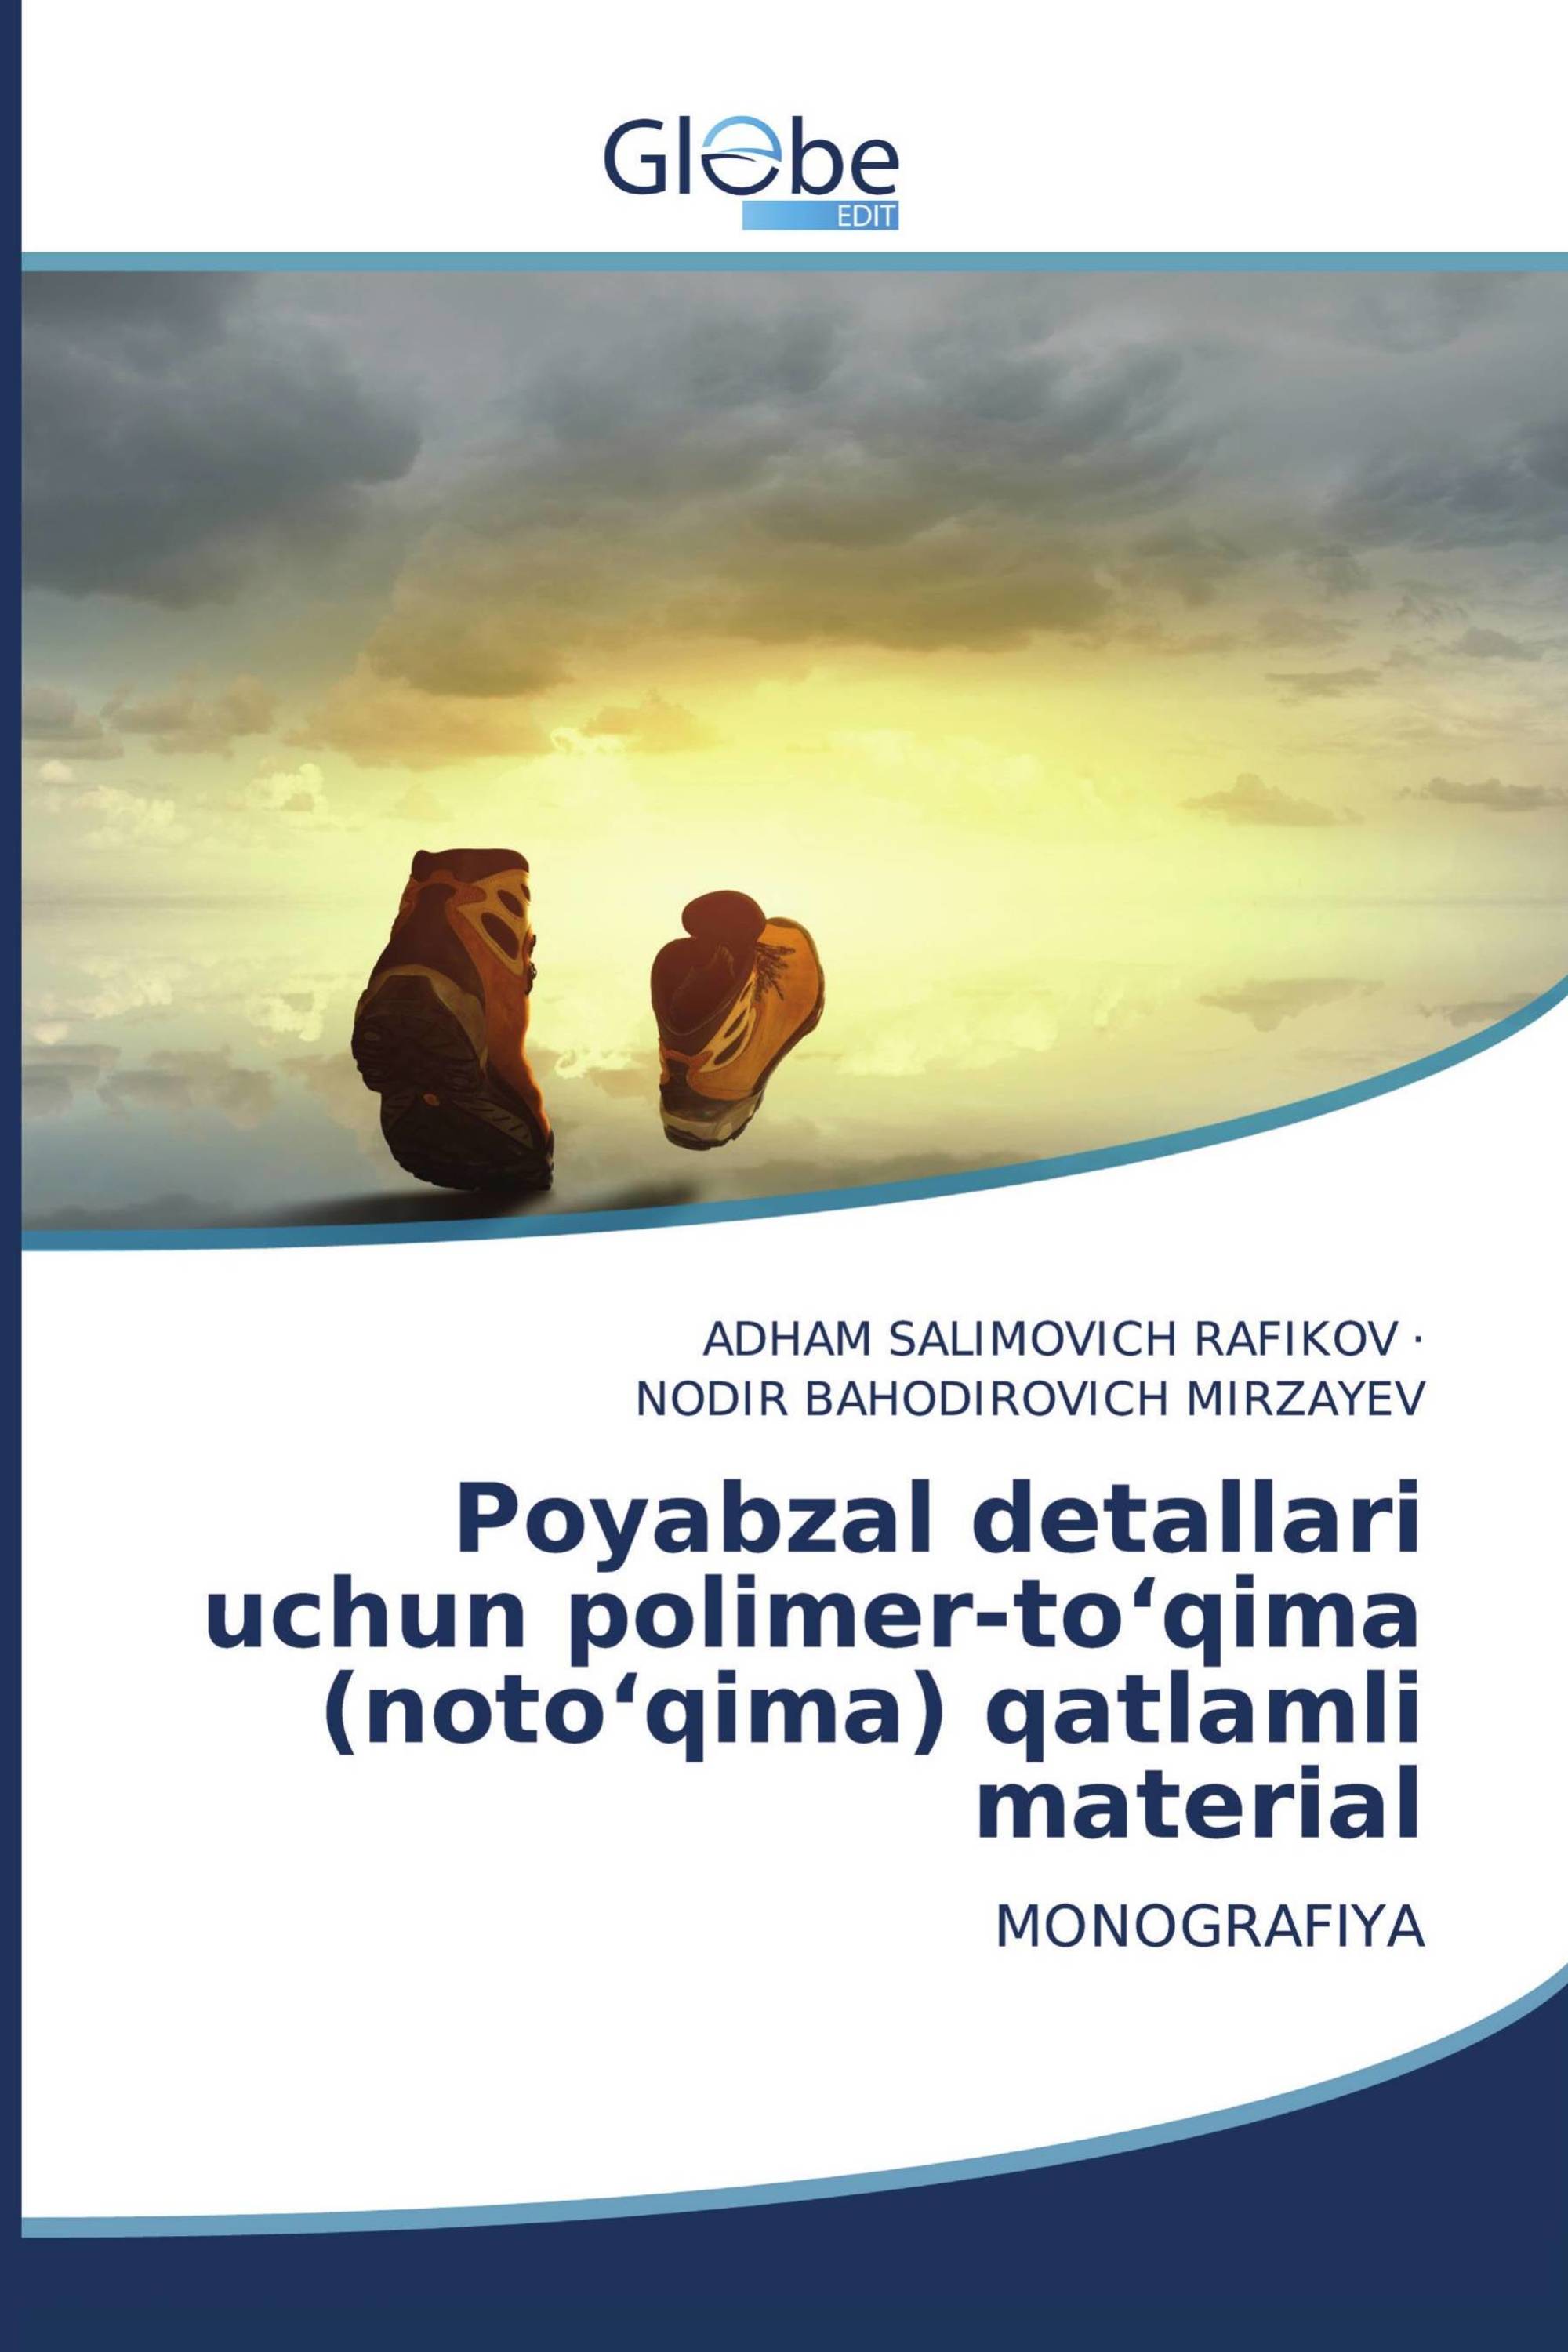 Poyabzal detallari uchun polimer-to‘qima (noto‘qima) qatlamli material